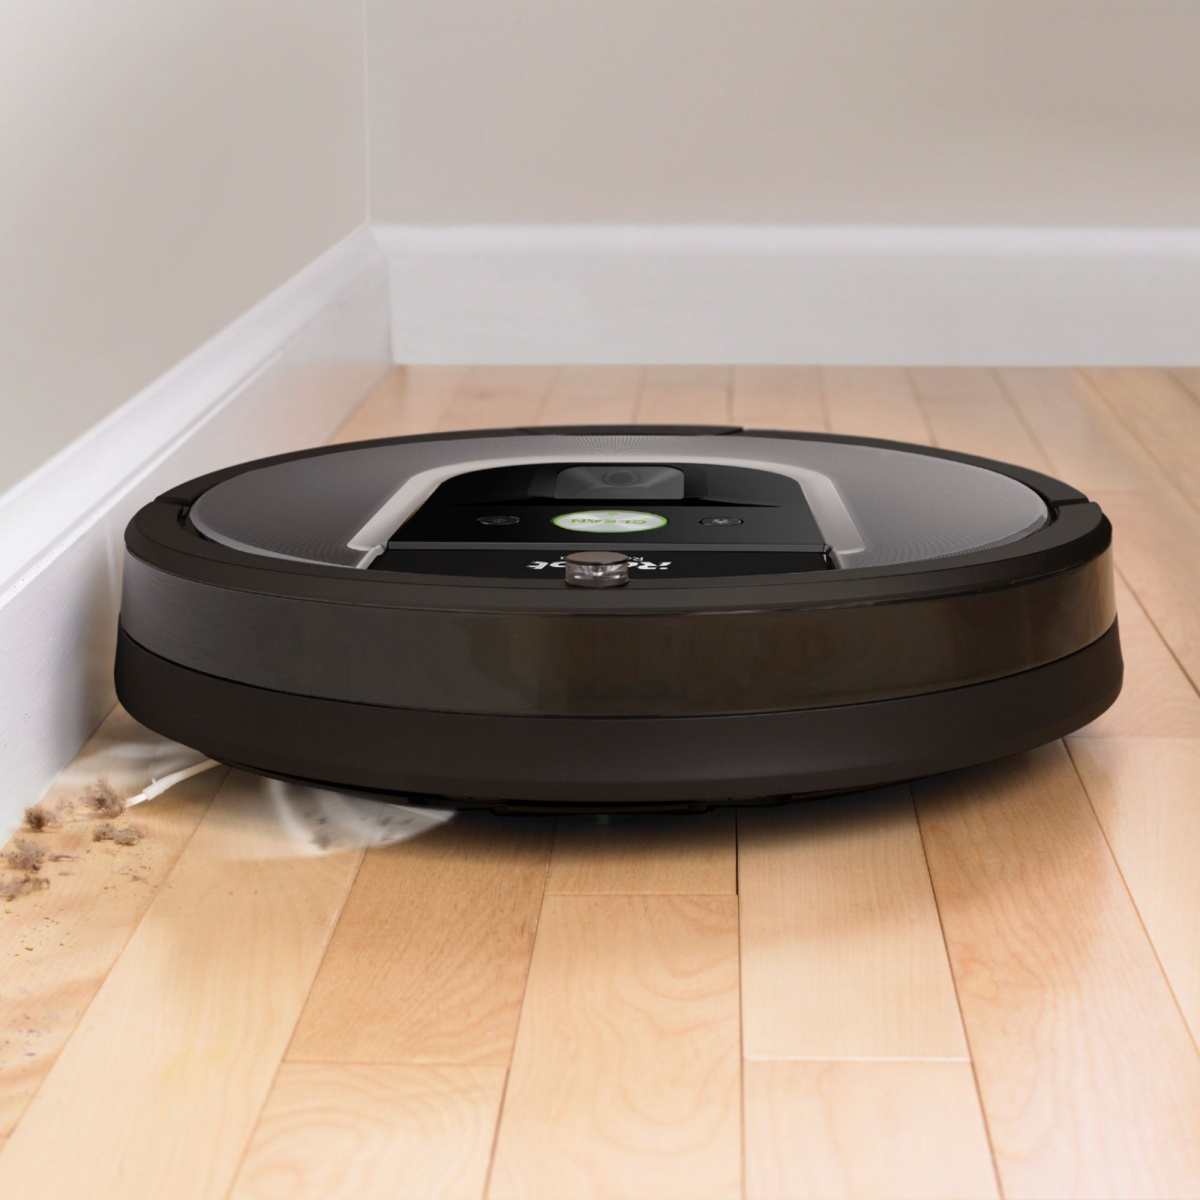 Top 5 Best Robot Vacuum Cleaner Deals, Roomba On Hardwood Floors Reddit